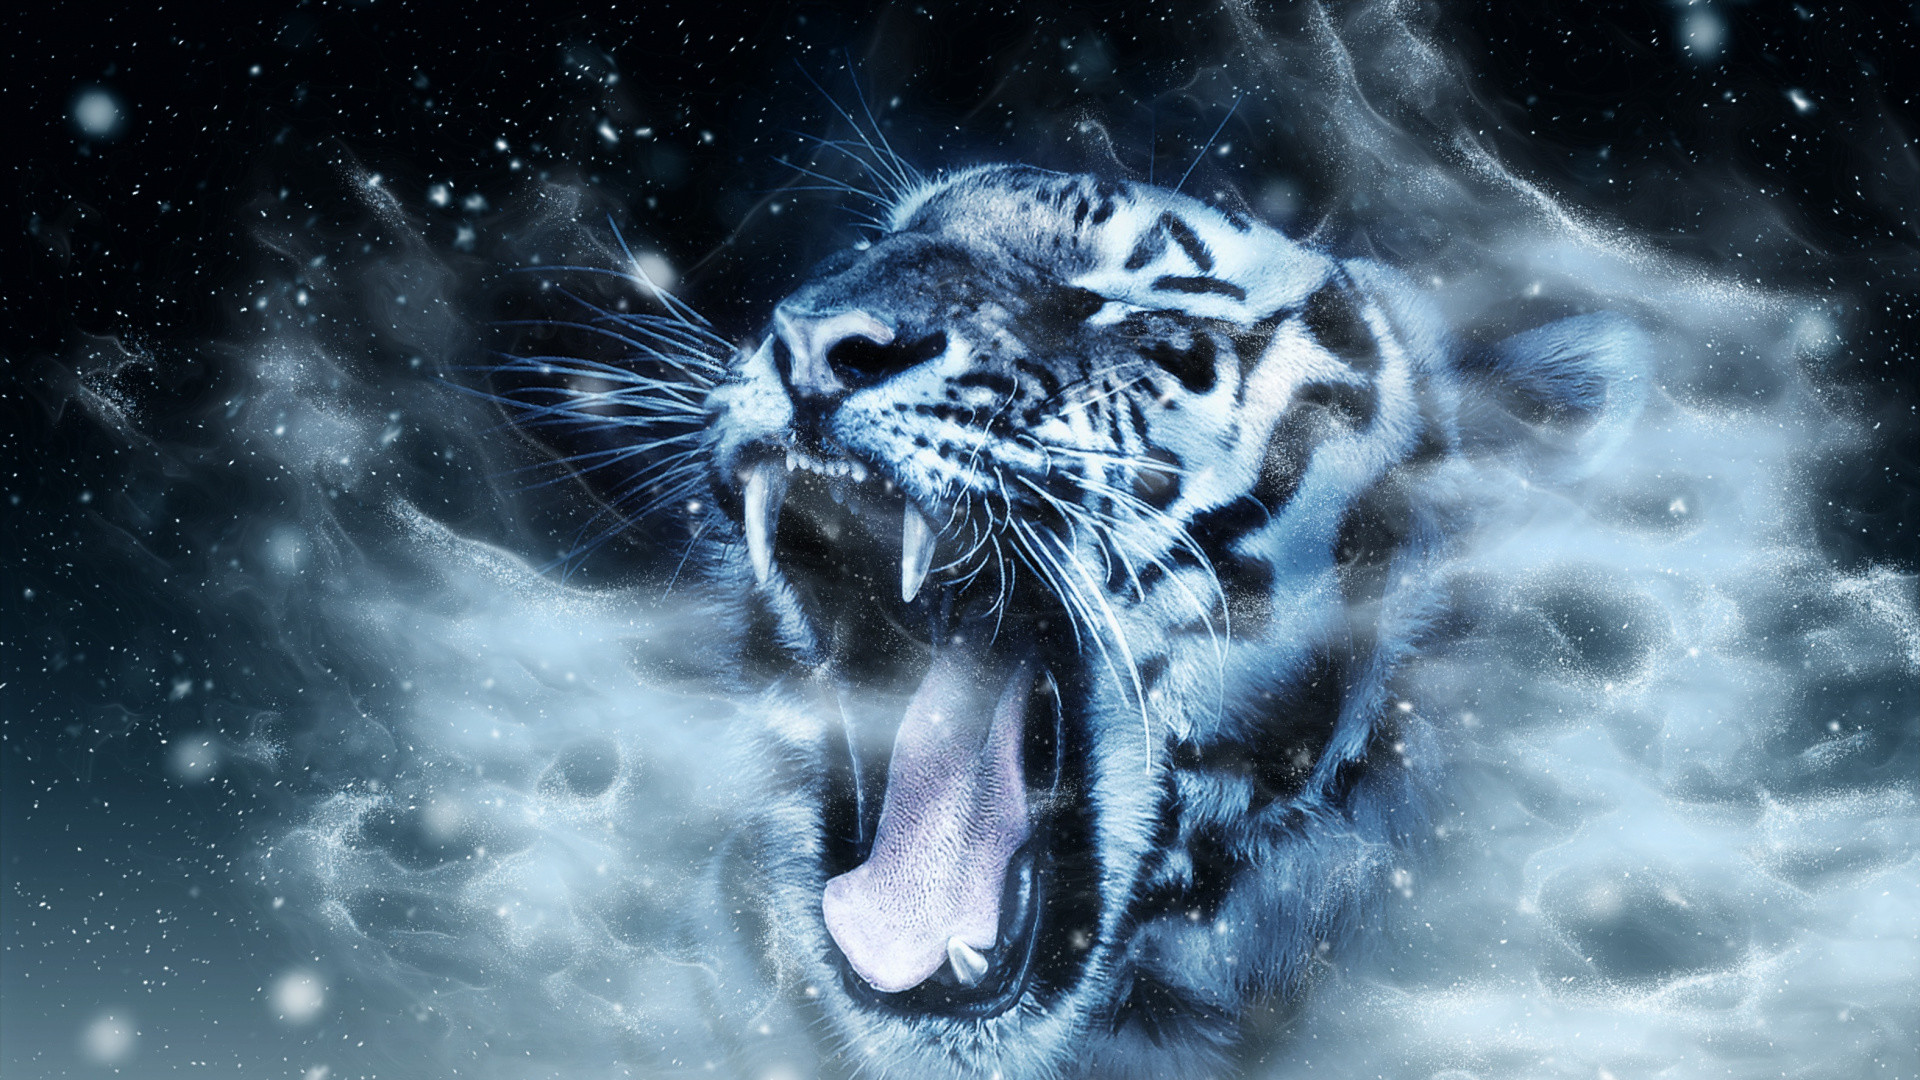 Black Panther Animal Wallpaper Hd 1080p - Hachiman Wallpaper